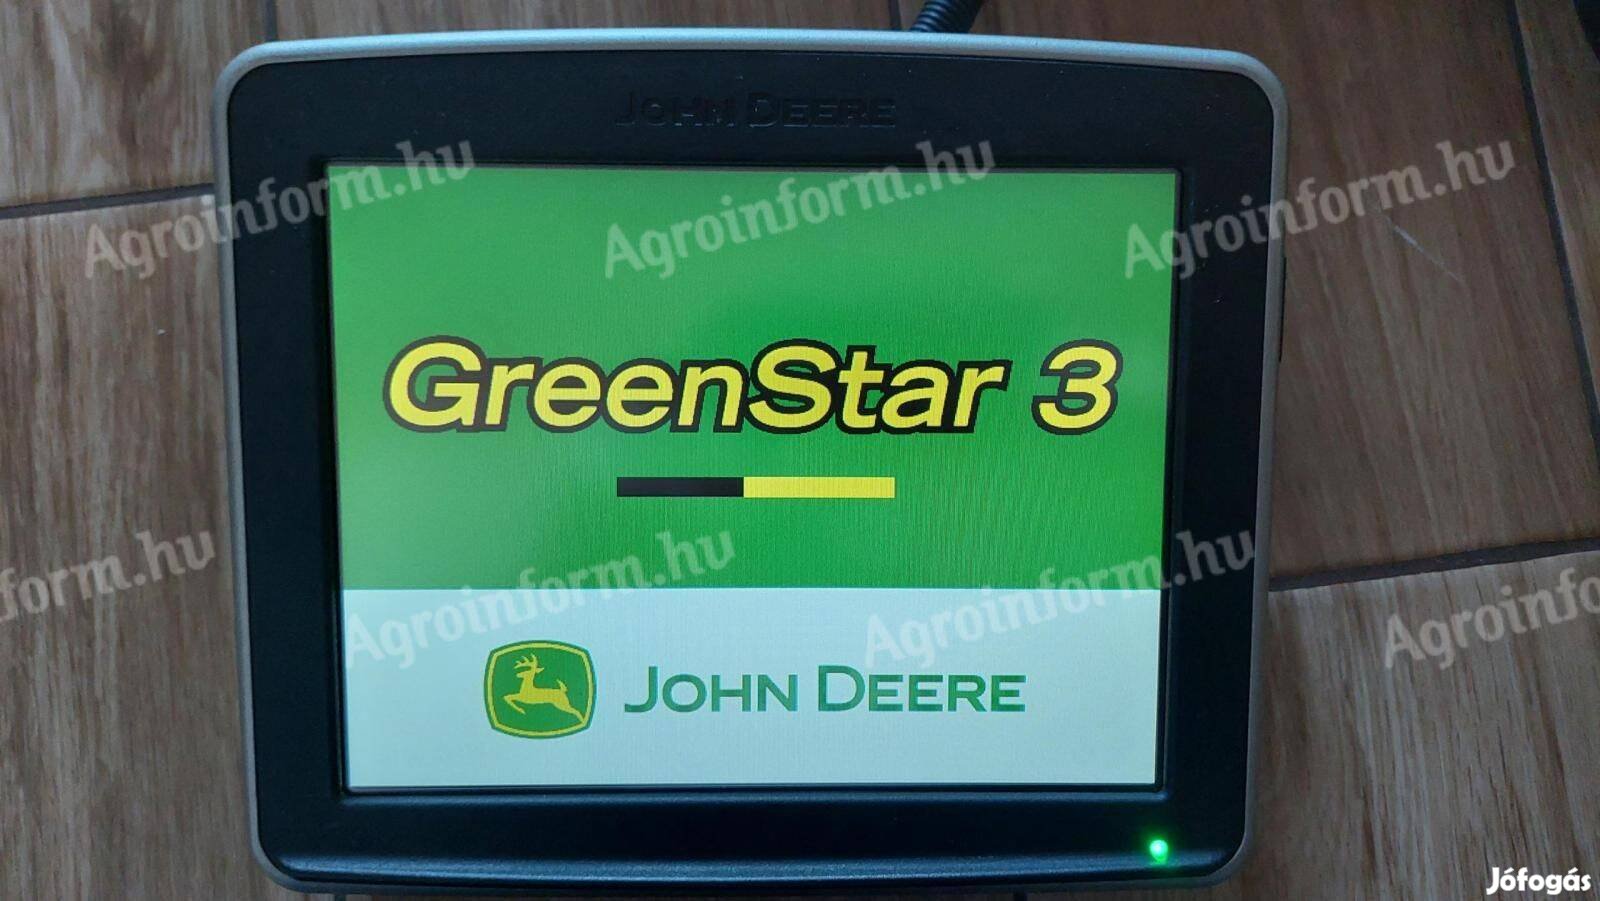 John Deere Greenstar 2630 Monitor Autotrac szakaszvezérlés aktiváció